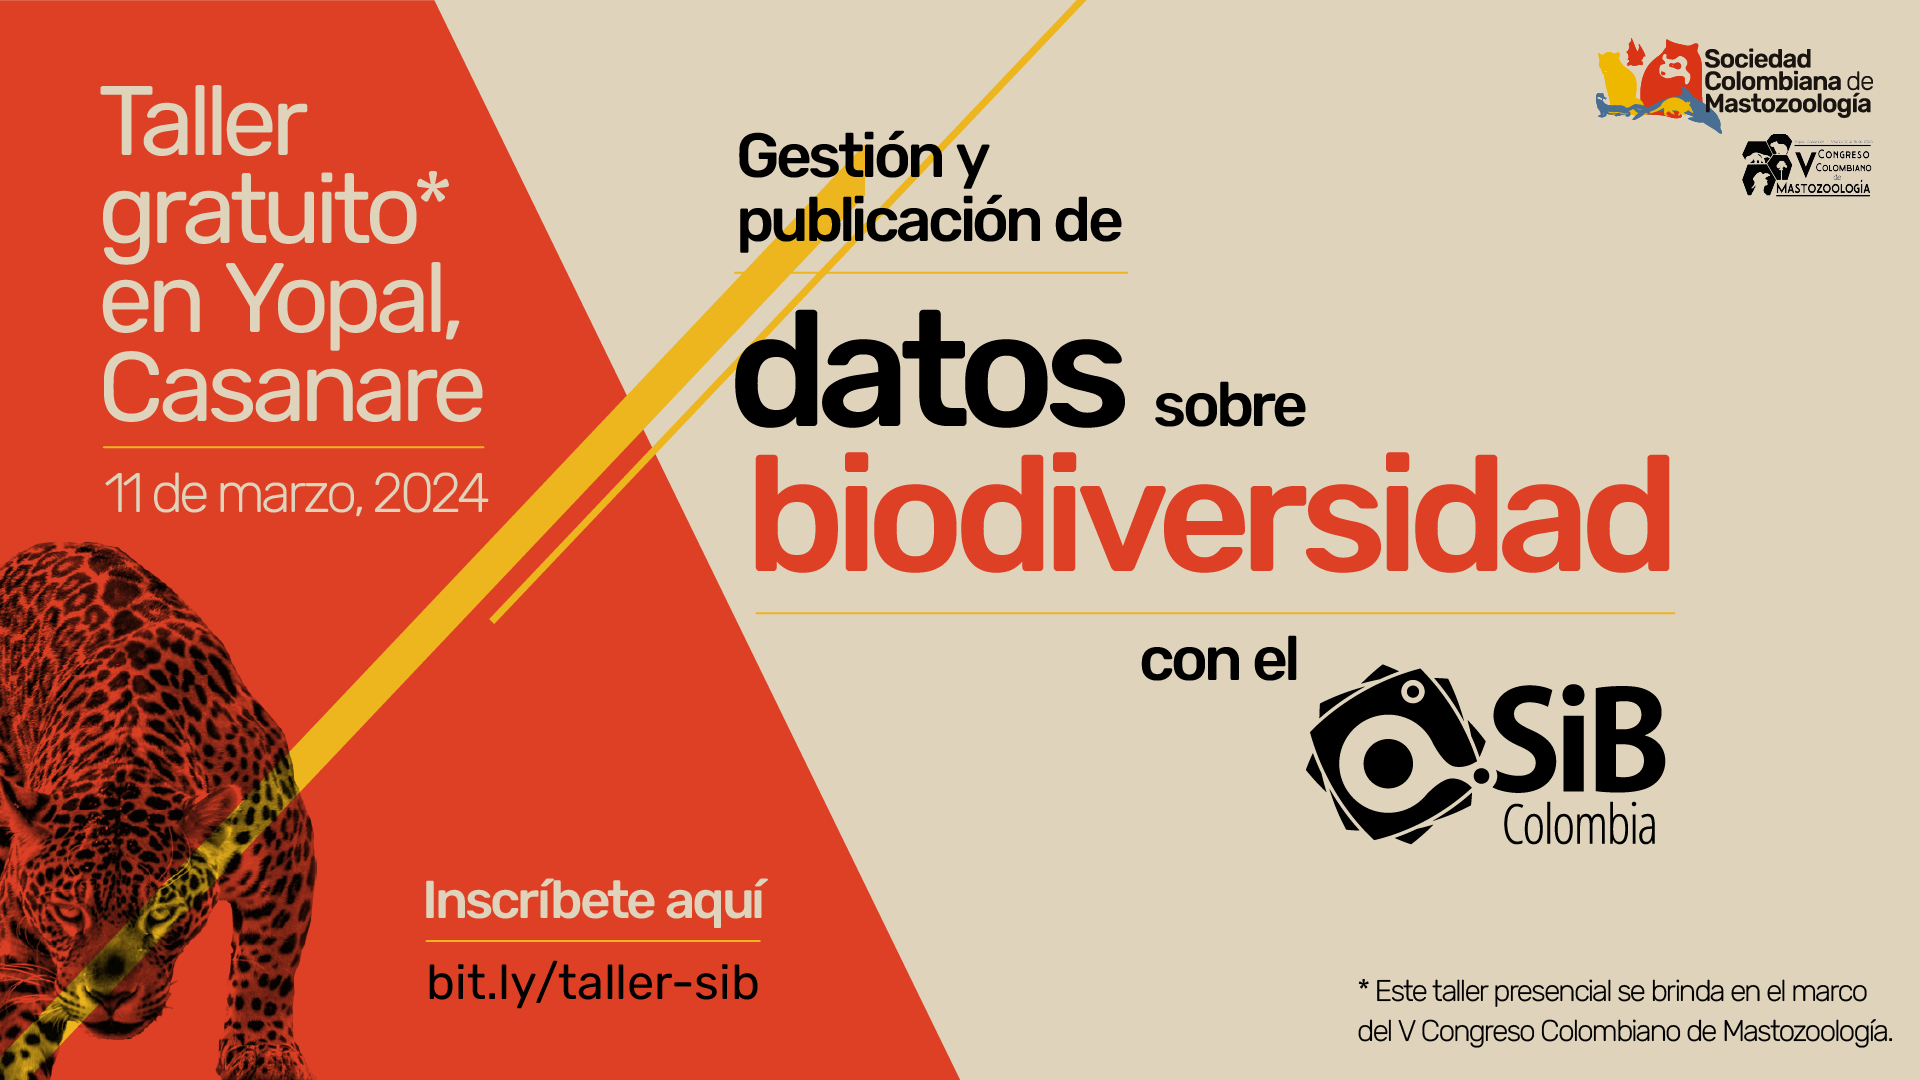 Taller gratuito sobre gestión y publicación de datos abiertos sobre biodiversidad con el SiB Colombia